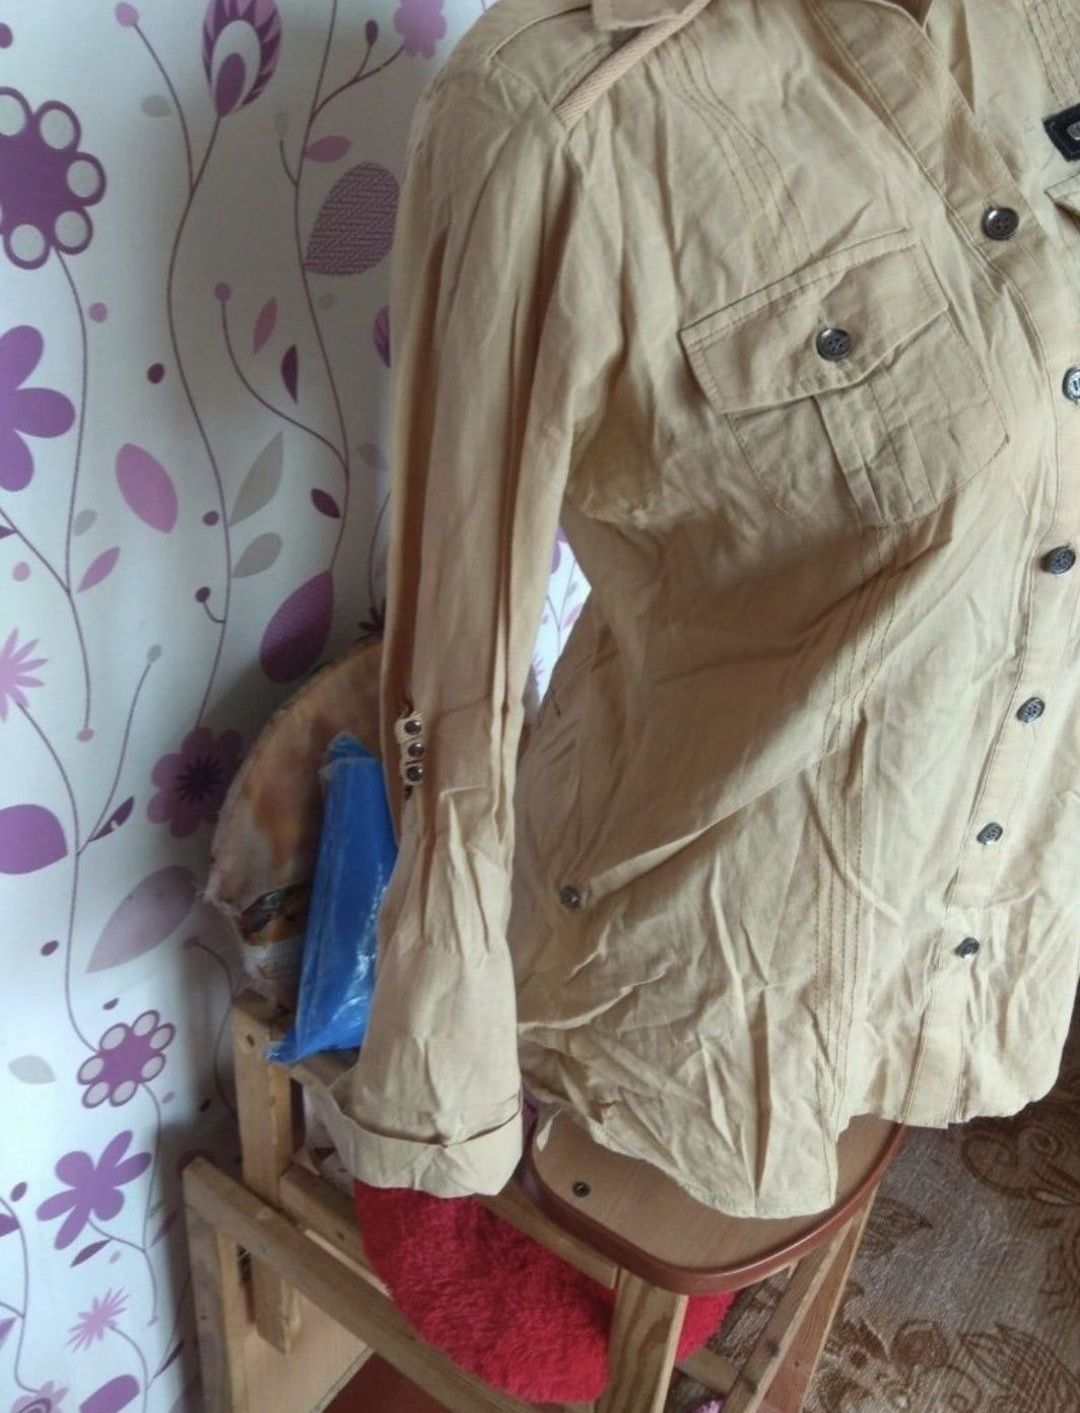 44-46 р. курточка джинсовая майка рубашка-блузка свитер кофта

В ОТЛИЧ